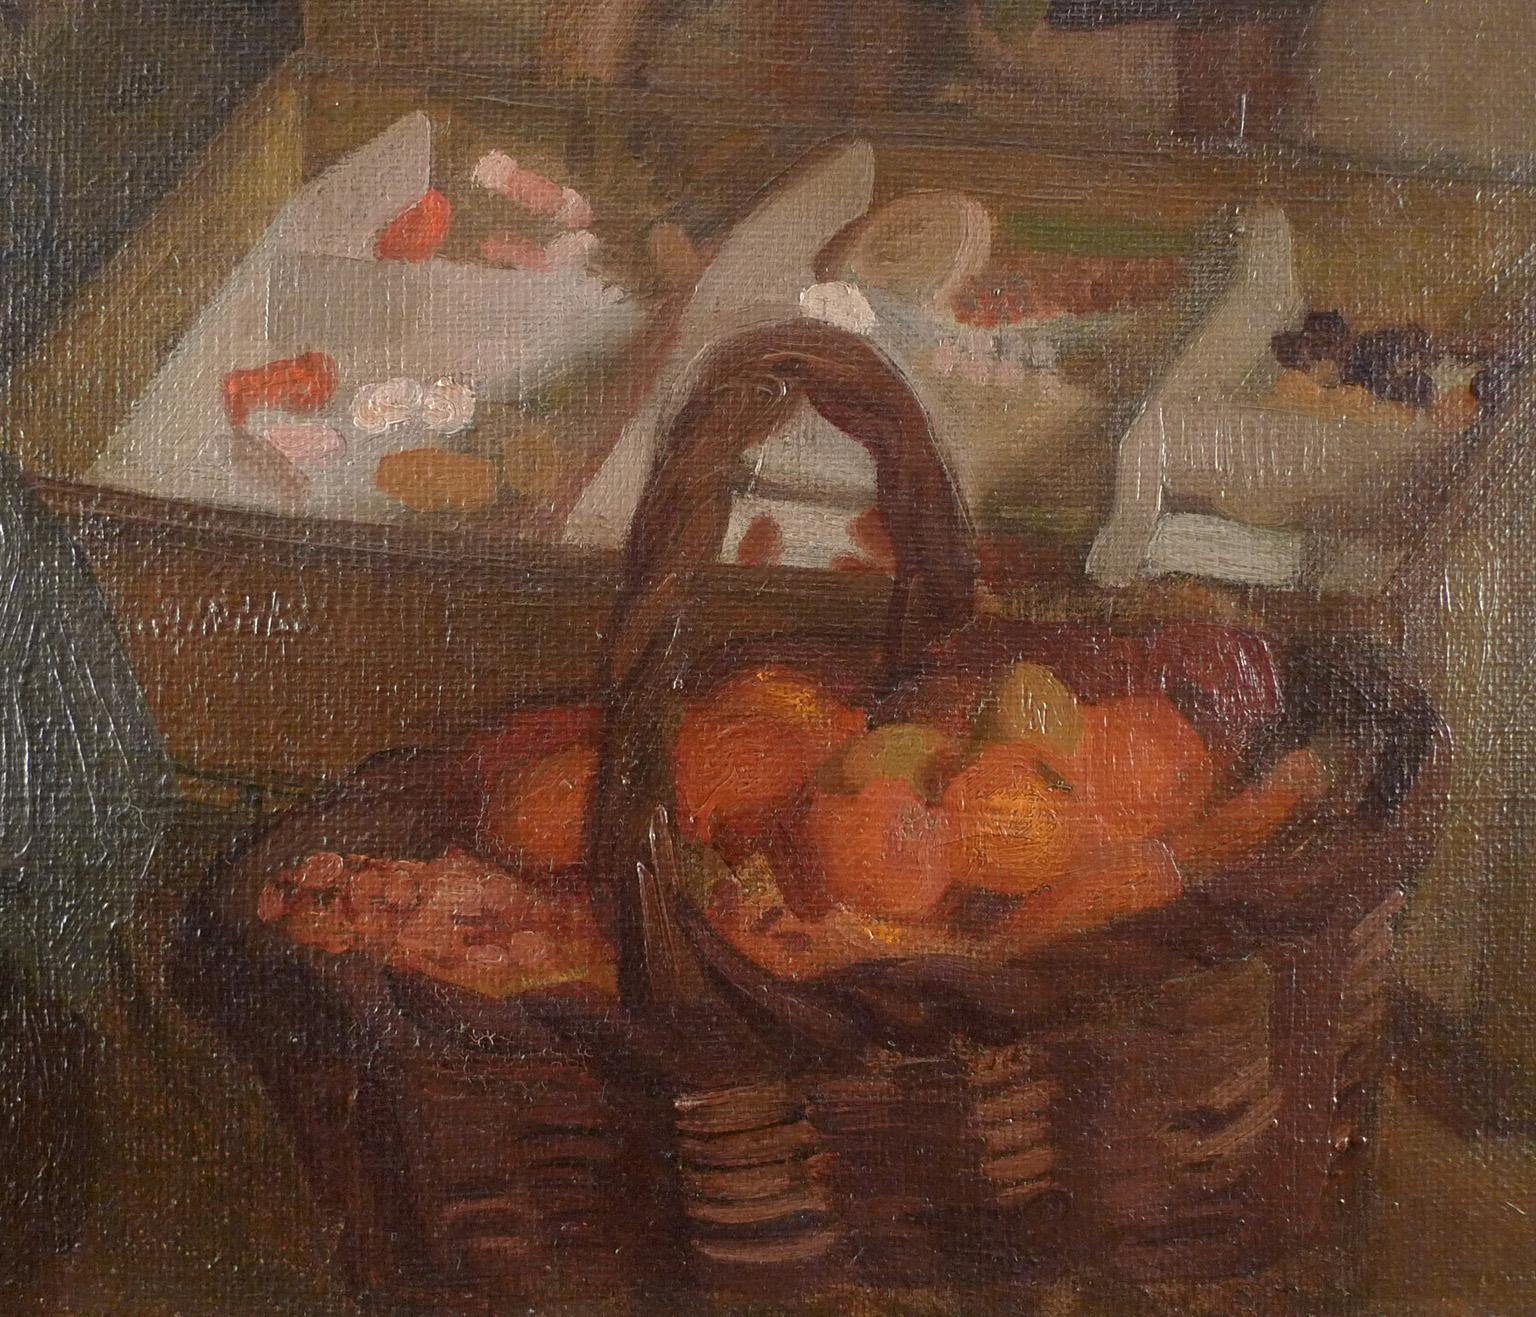 Día de mercado, Oil on Canvas by José María López Mezquita 6